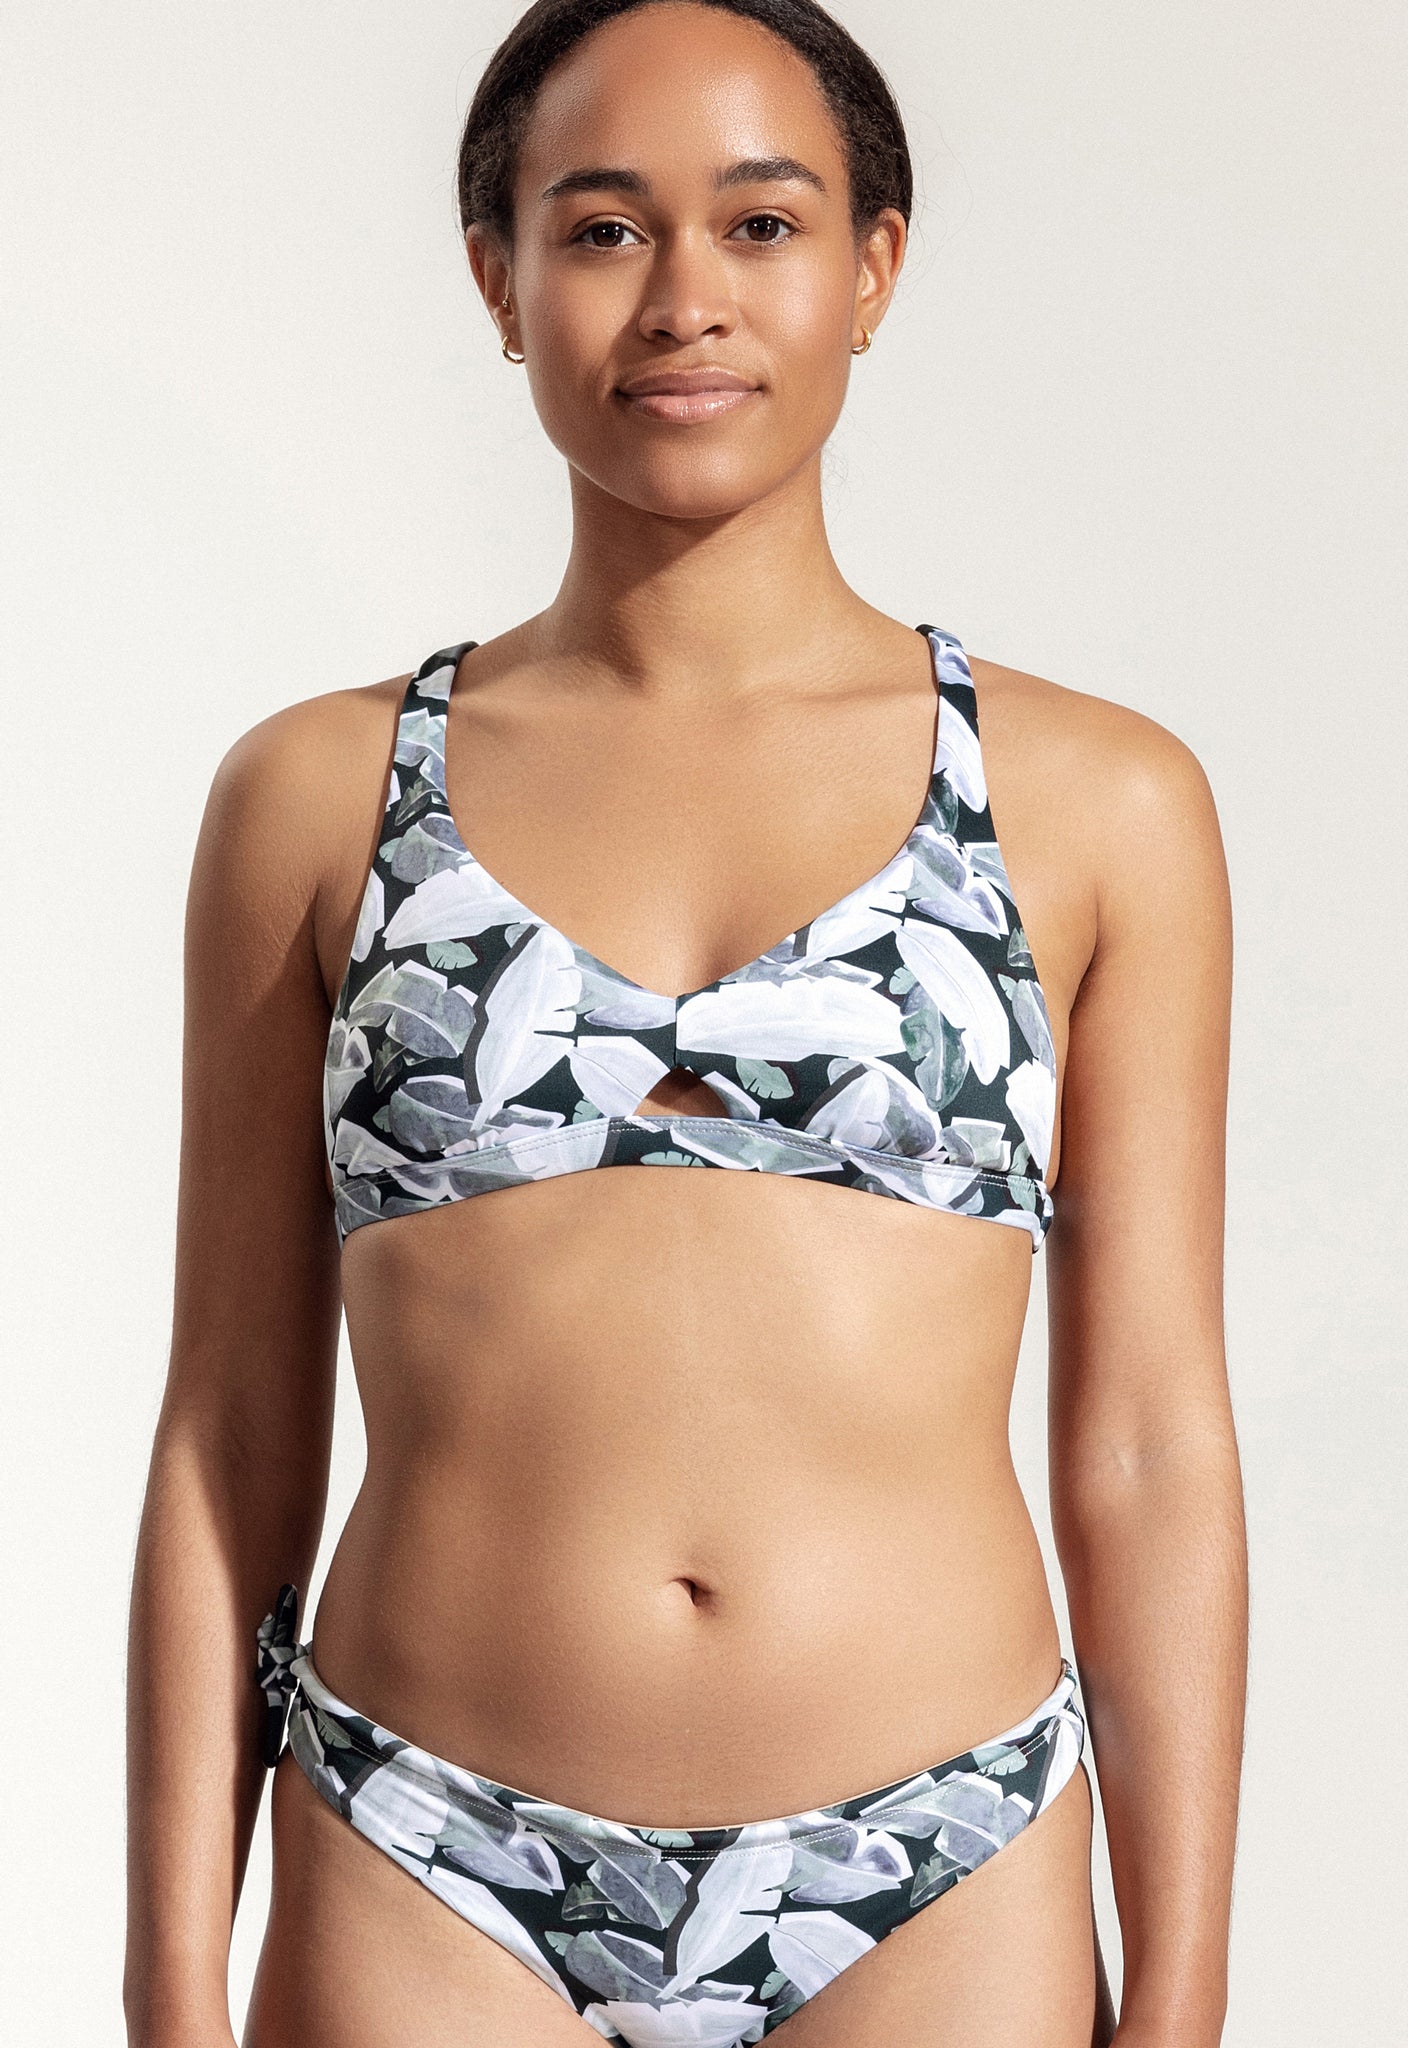 Surf Bikini Top "Coho" with leaf print